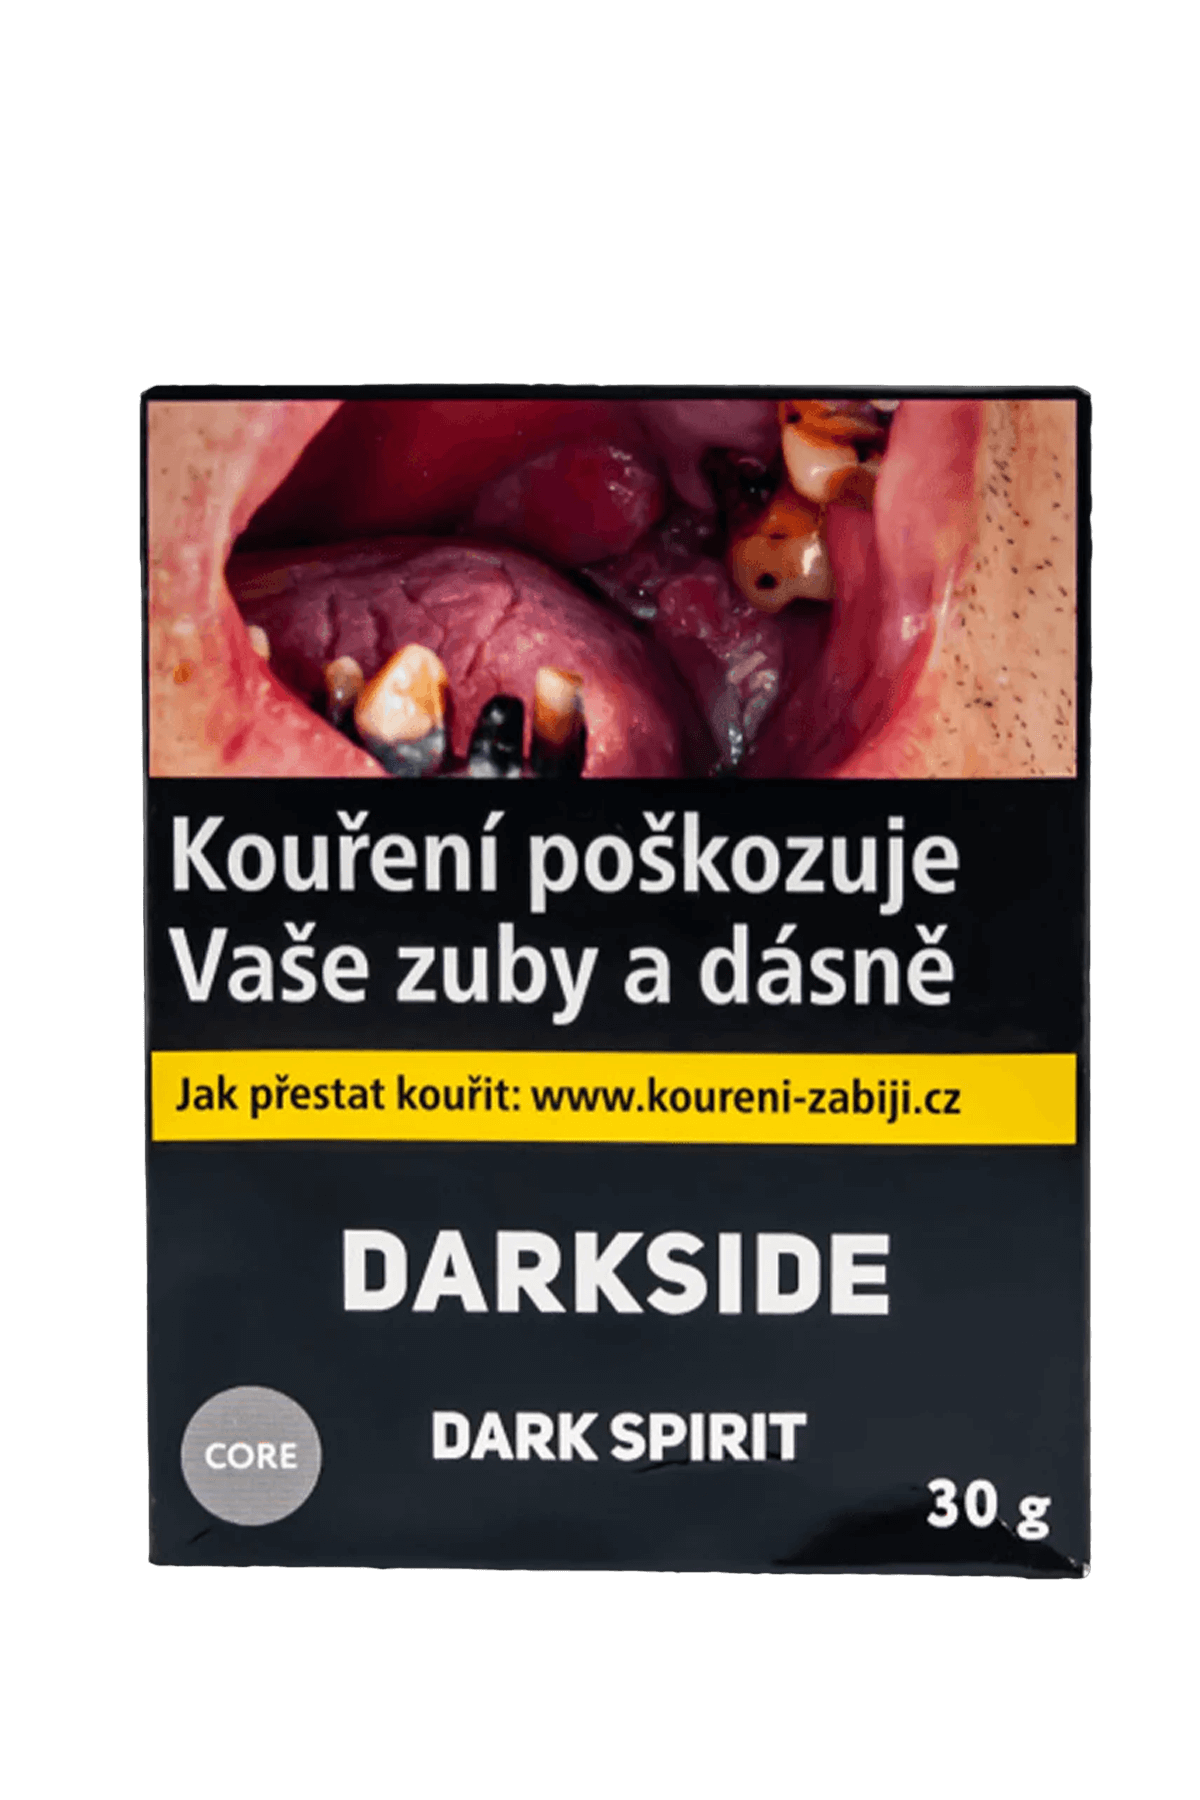 Tobacco - Darkside Core 30g - Dark Spirit